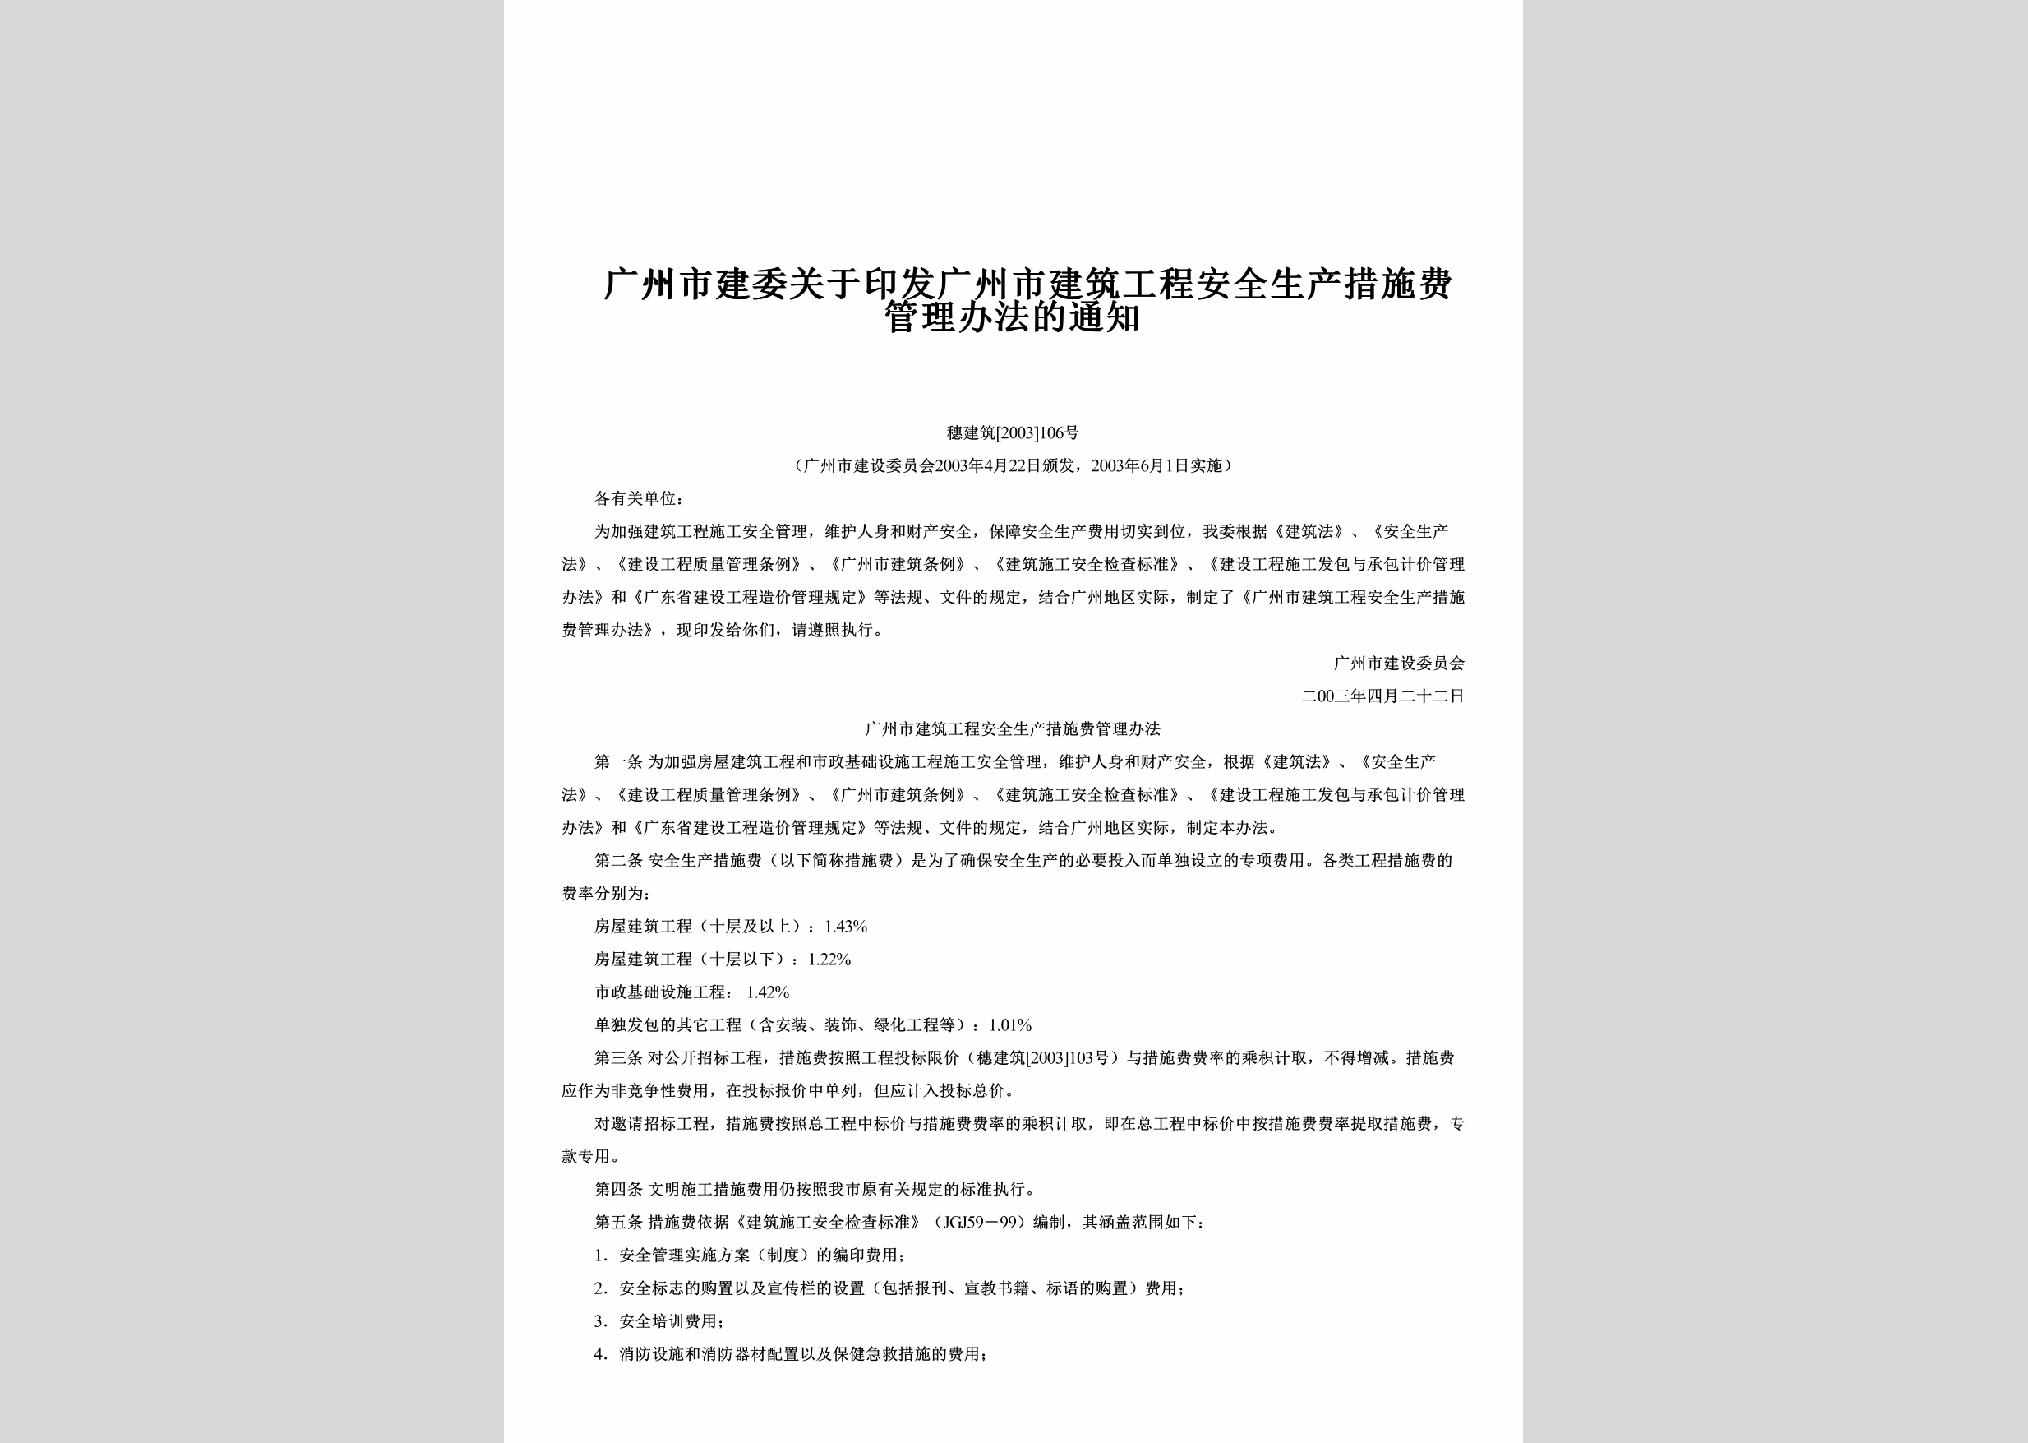 穗建筑[2003]106号：关于印发广州市建筑工程安全生产措施费管理办法的通知